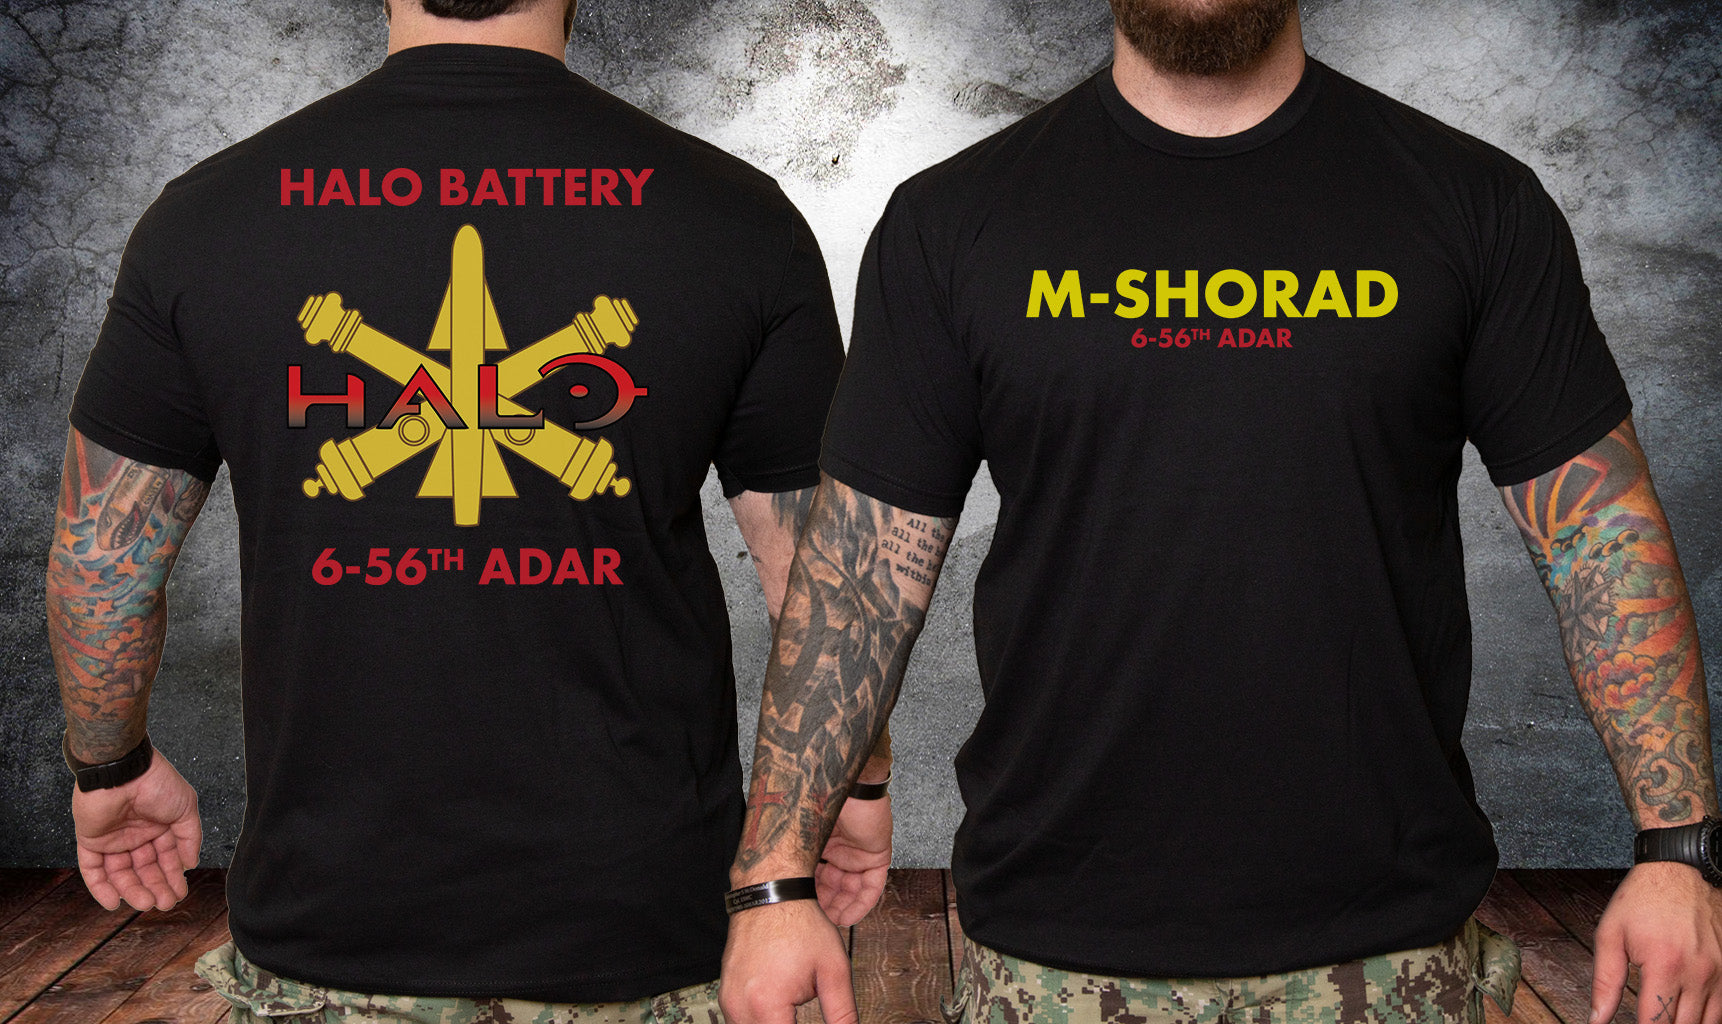 6-56 ADAR Battery Short Sleeve PT Shirt